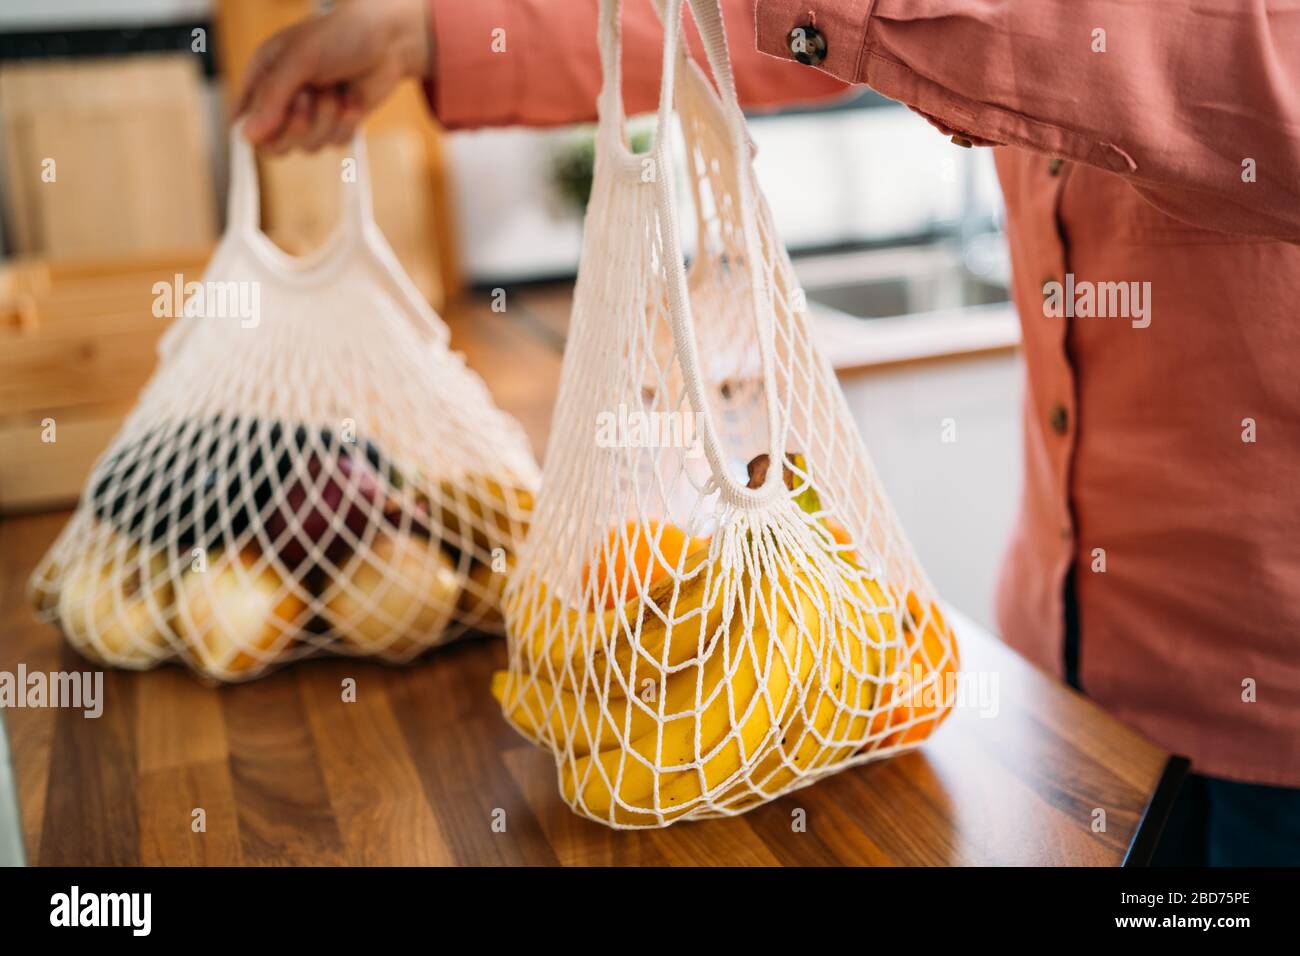 Femme revenez à la maison après avoir fait des achats de fruits et légumes avec sac réutilisable coton biologique et sacs en mesh pour faire des achats. Zéro déchet, sans plastique con Banque D'Images